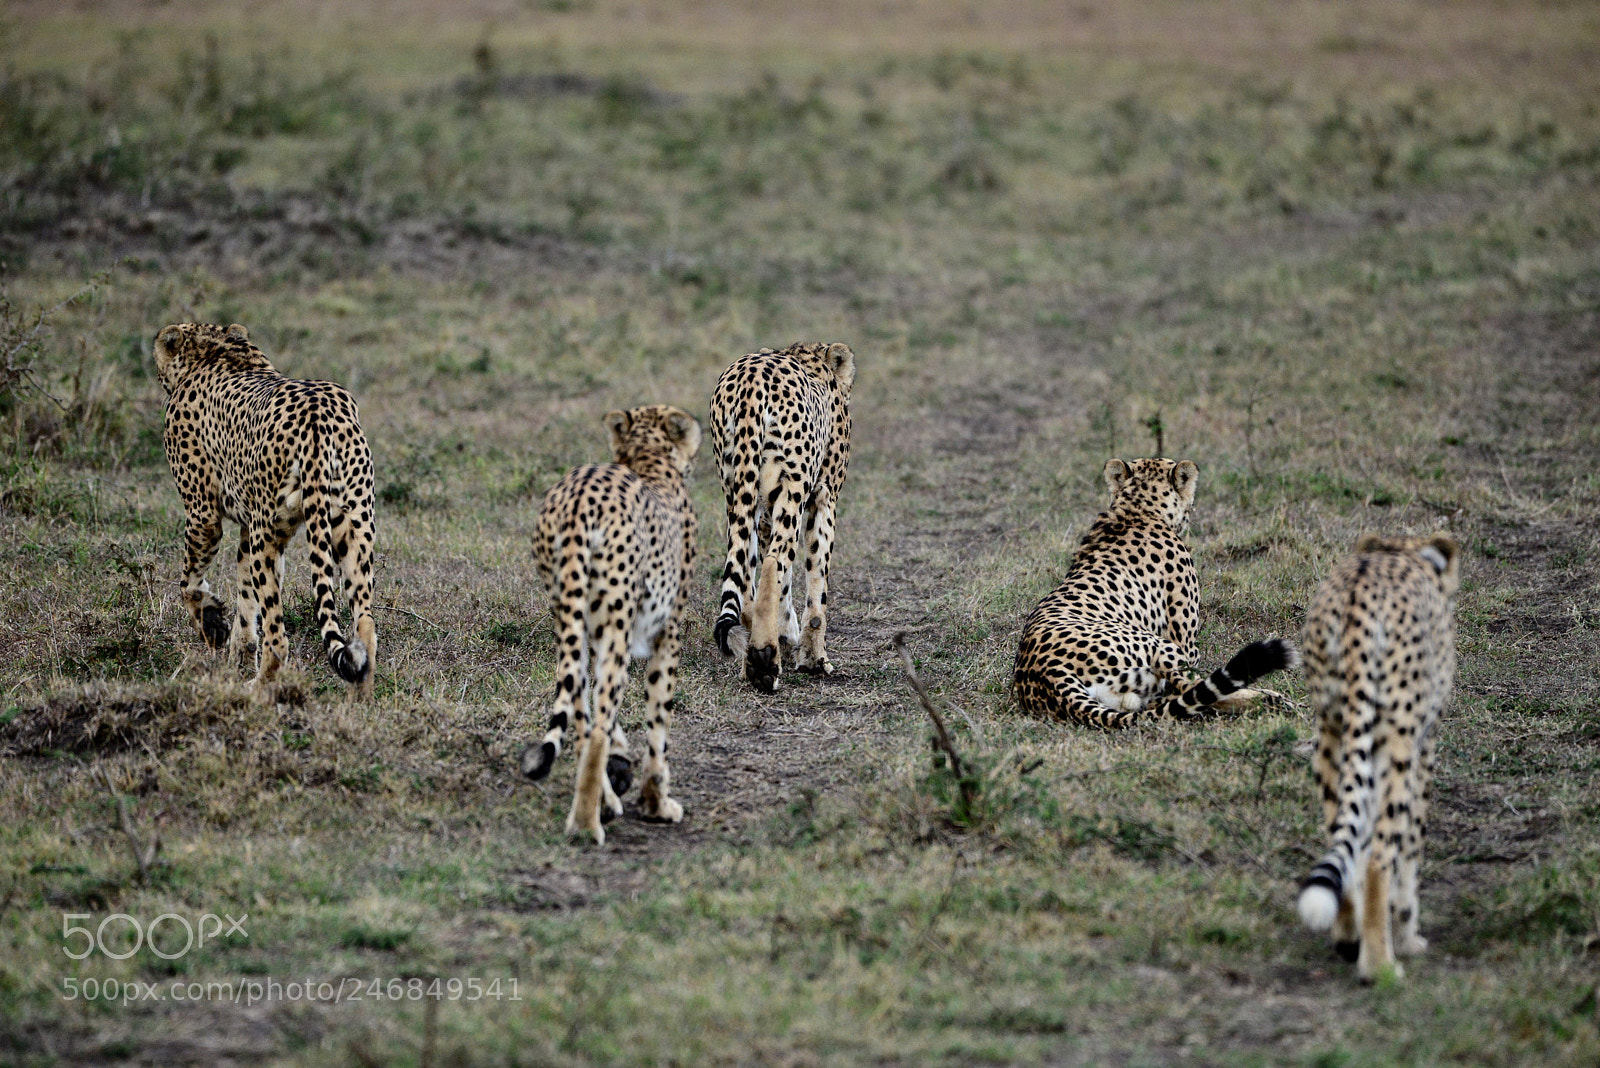 Nikon D800 sample photo. A band of cheetah photography